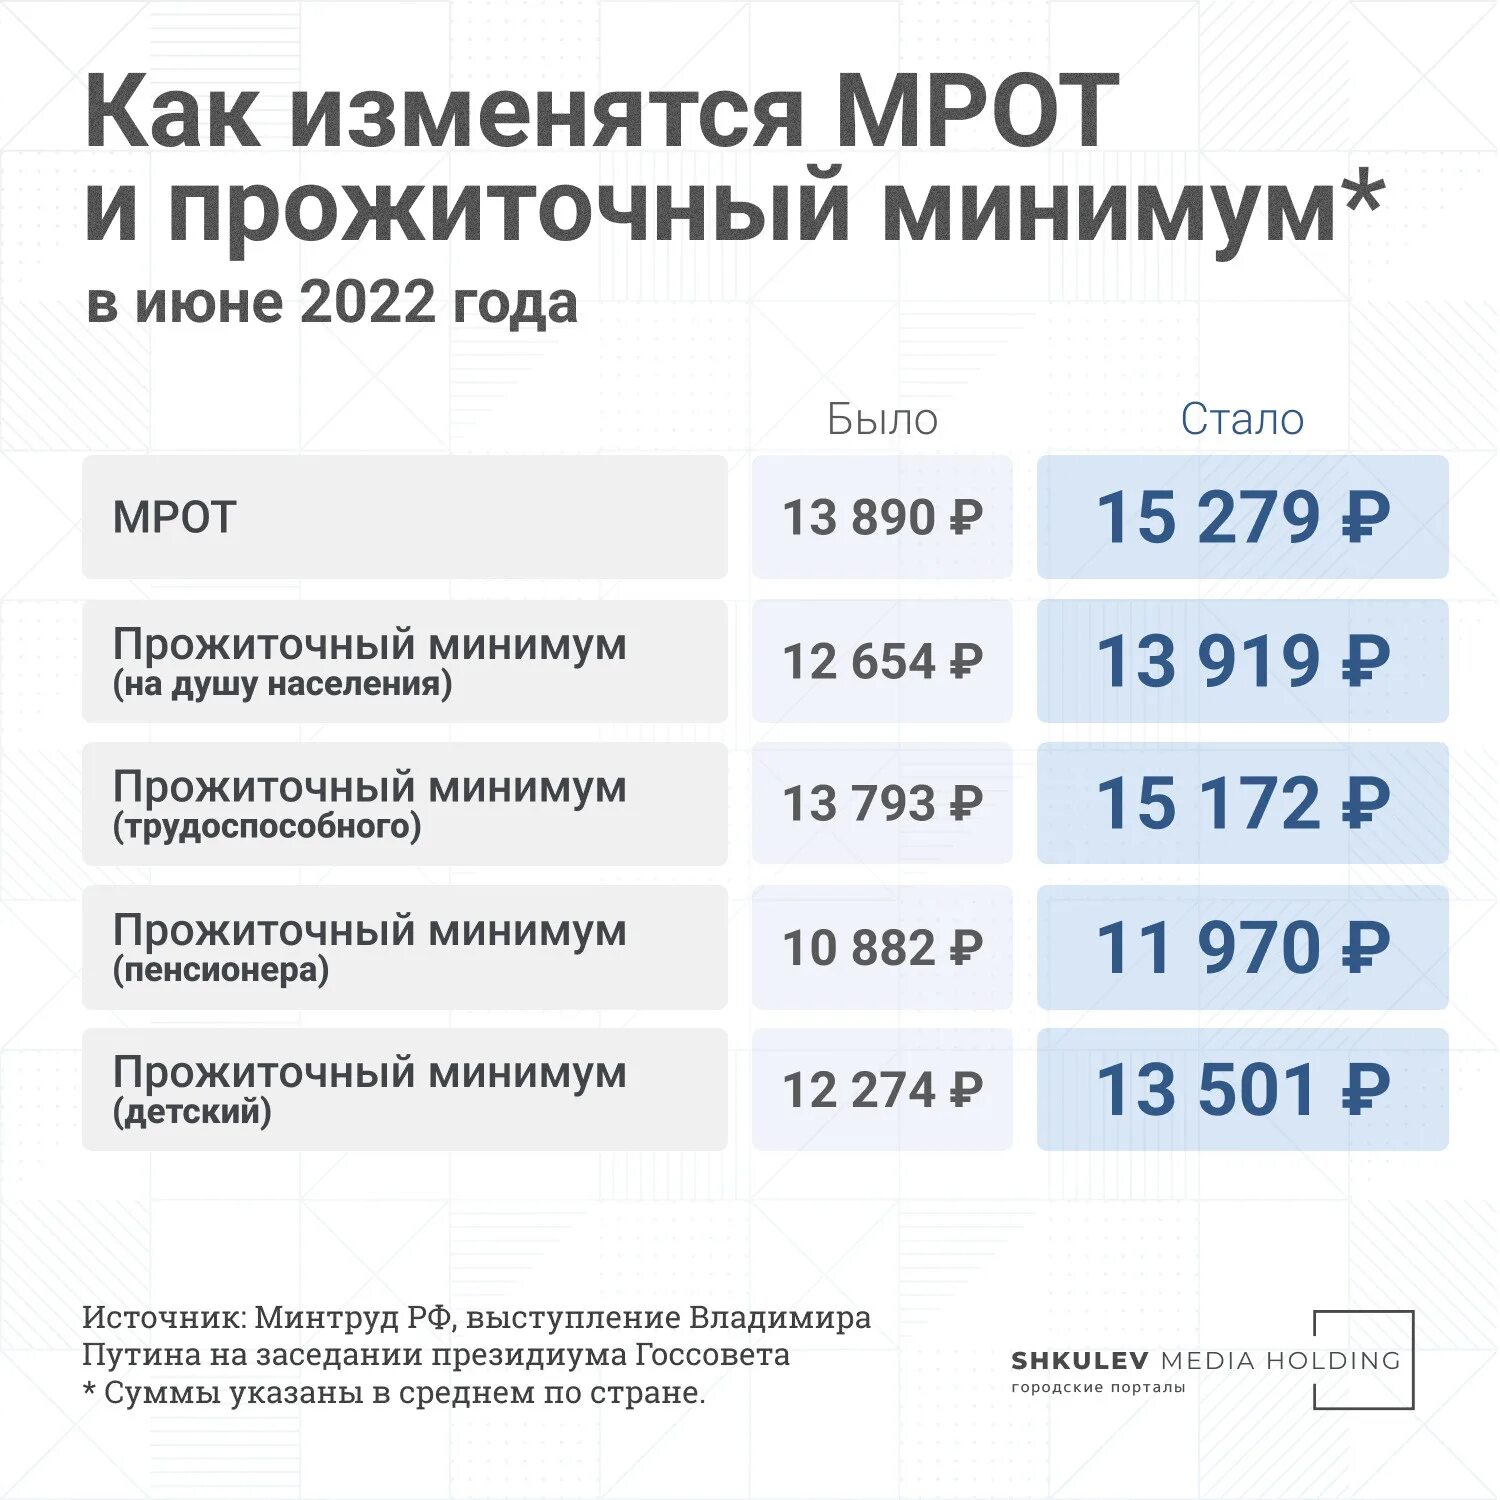 Пособия родившим в 2024 году. Прожиточный минимум в прошлом году в России 2023. МРОТ С июня 2022. МРОТ И прожиточный минимум 2022. Прожиточный минимум для трудоспособного населения в 2022.